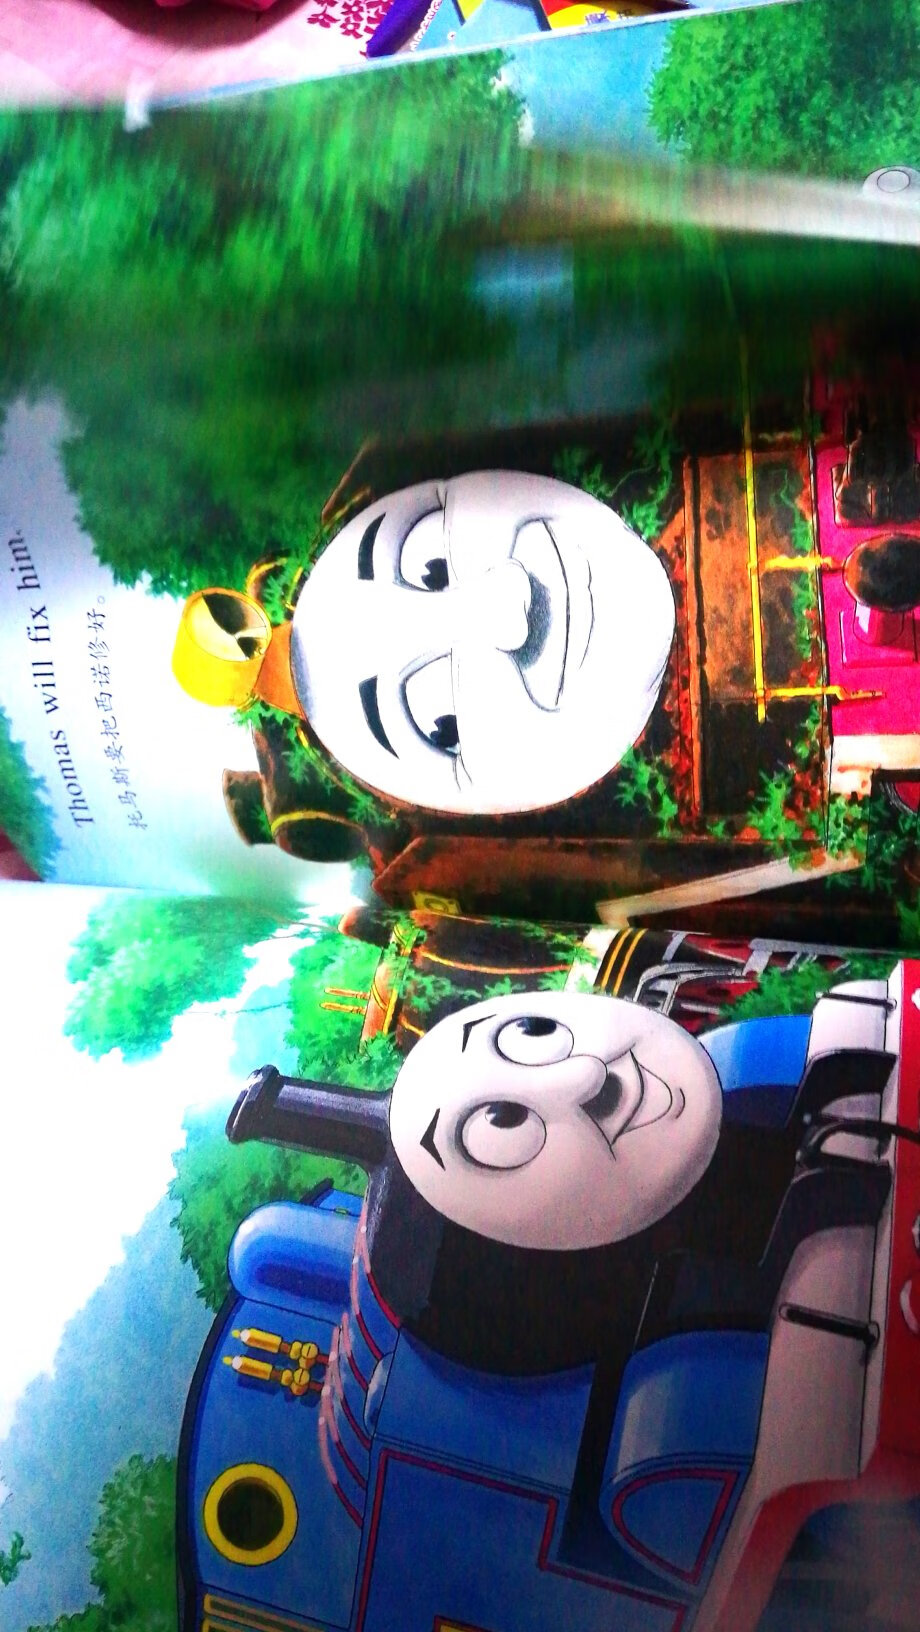 是因为宝宝喜欢托马斯小火车的动画片才买的，但是这套书是那种绘本，不像动画片形象那么生动，买了后孩子没怎么看